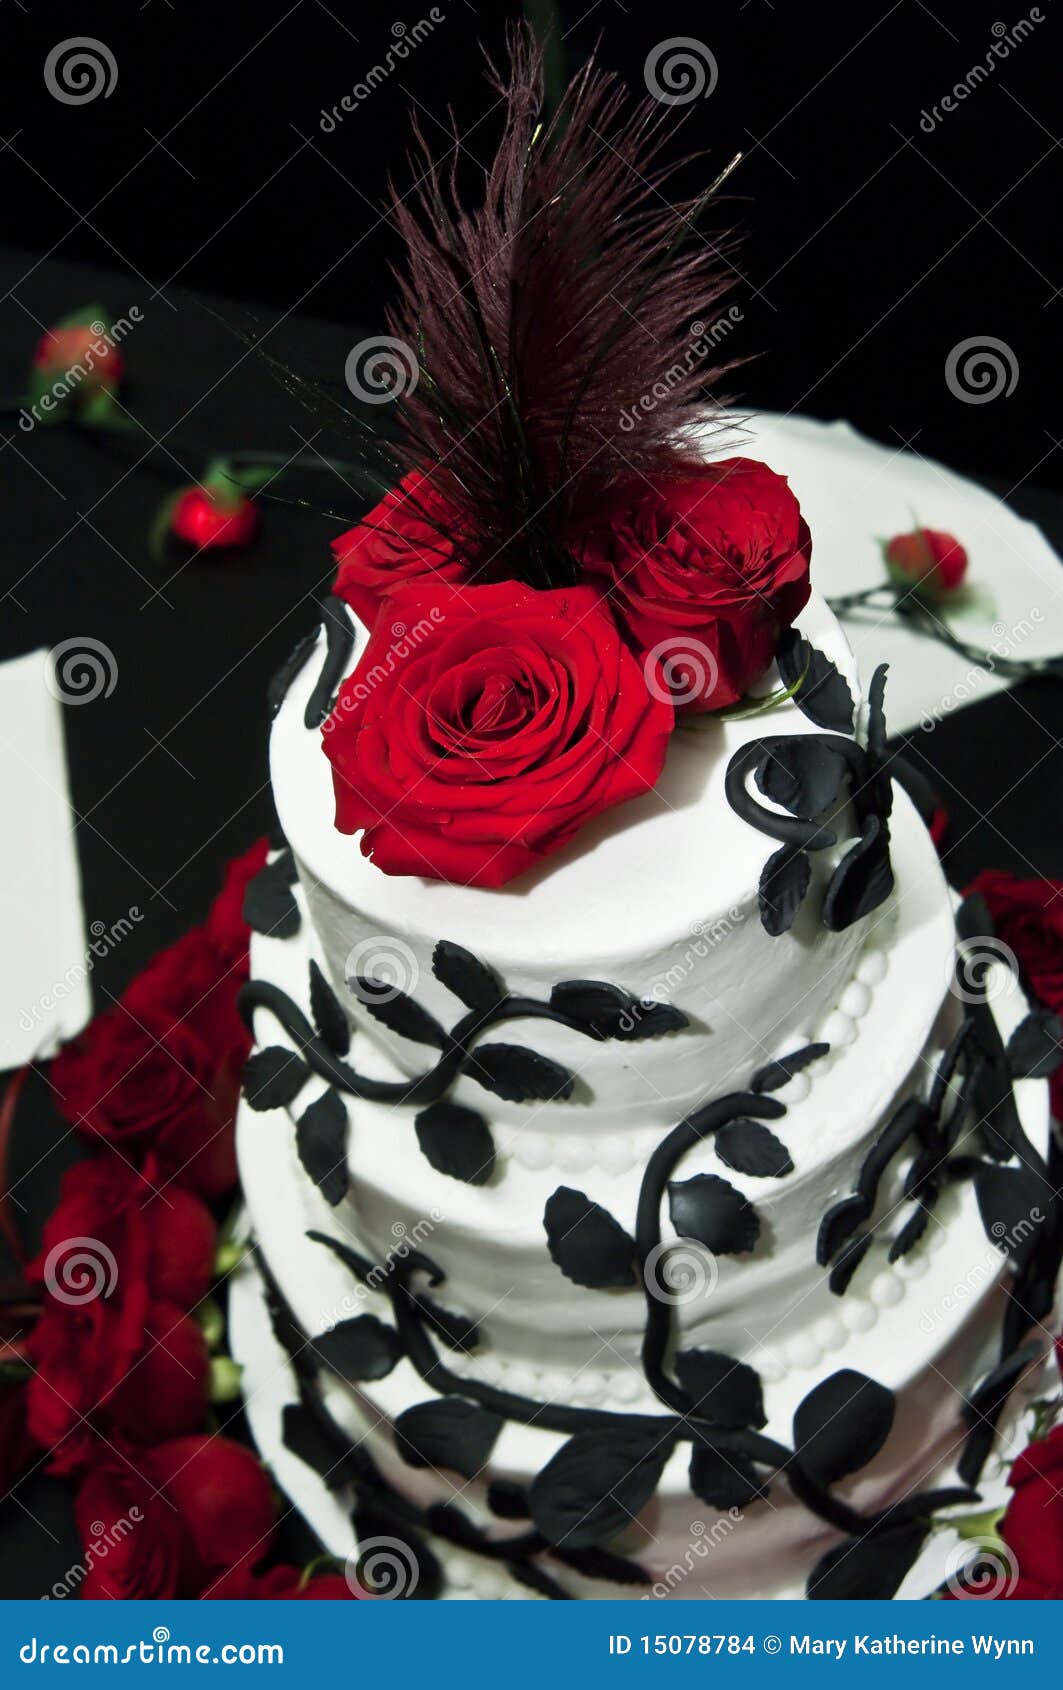 Bolo De Casamento Do Marfim Do Vintage Com Rosas Imagem de Stock - Imagem  de jogo, flor: 98852881